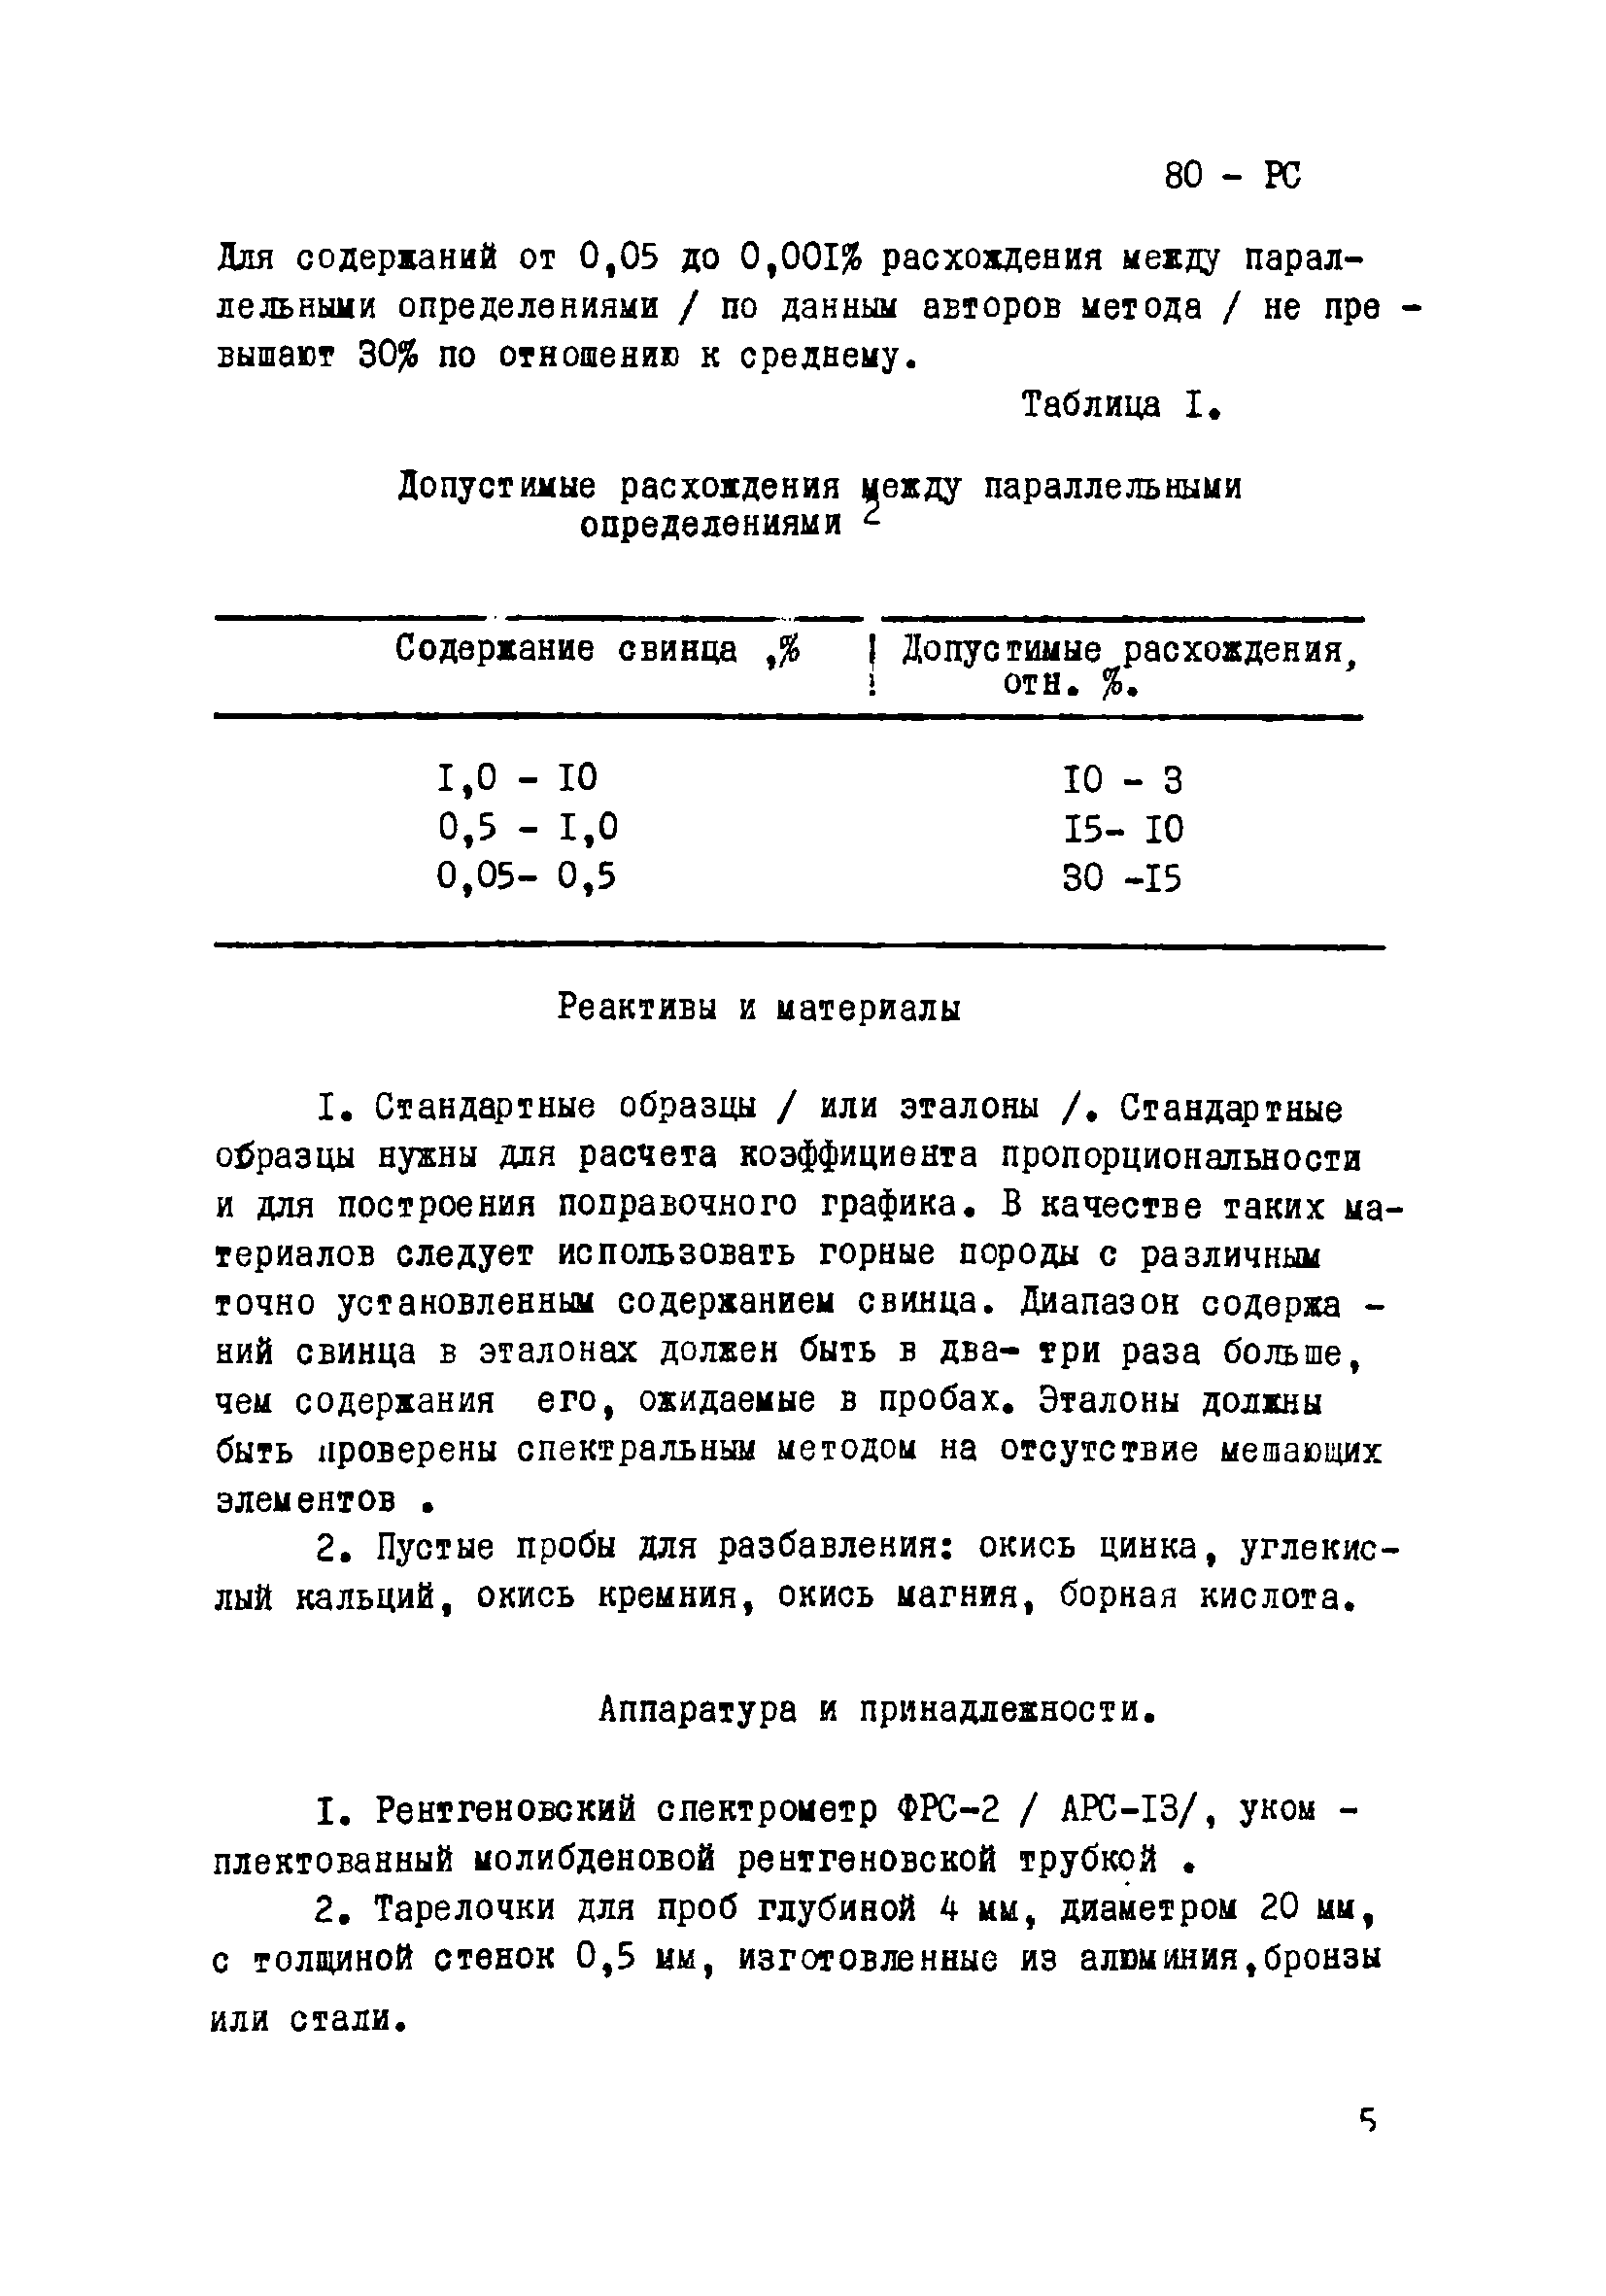 Инструкция НСАМ 80-РС